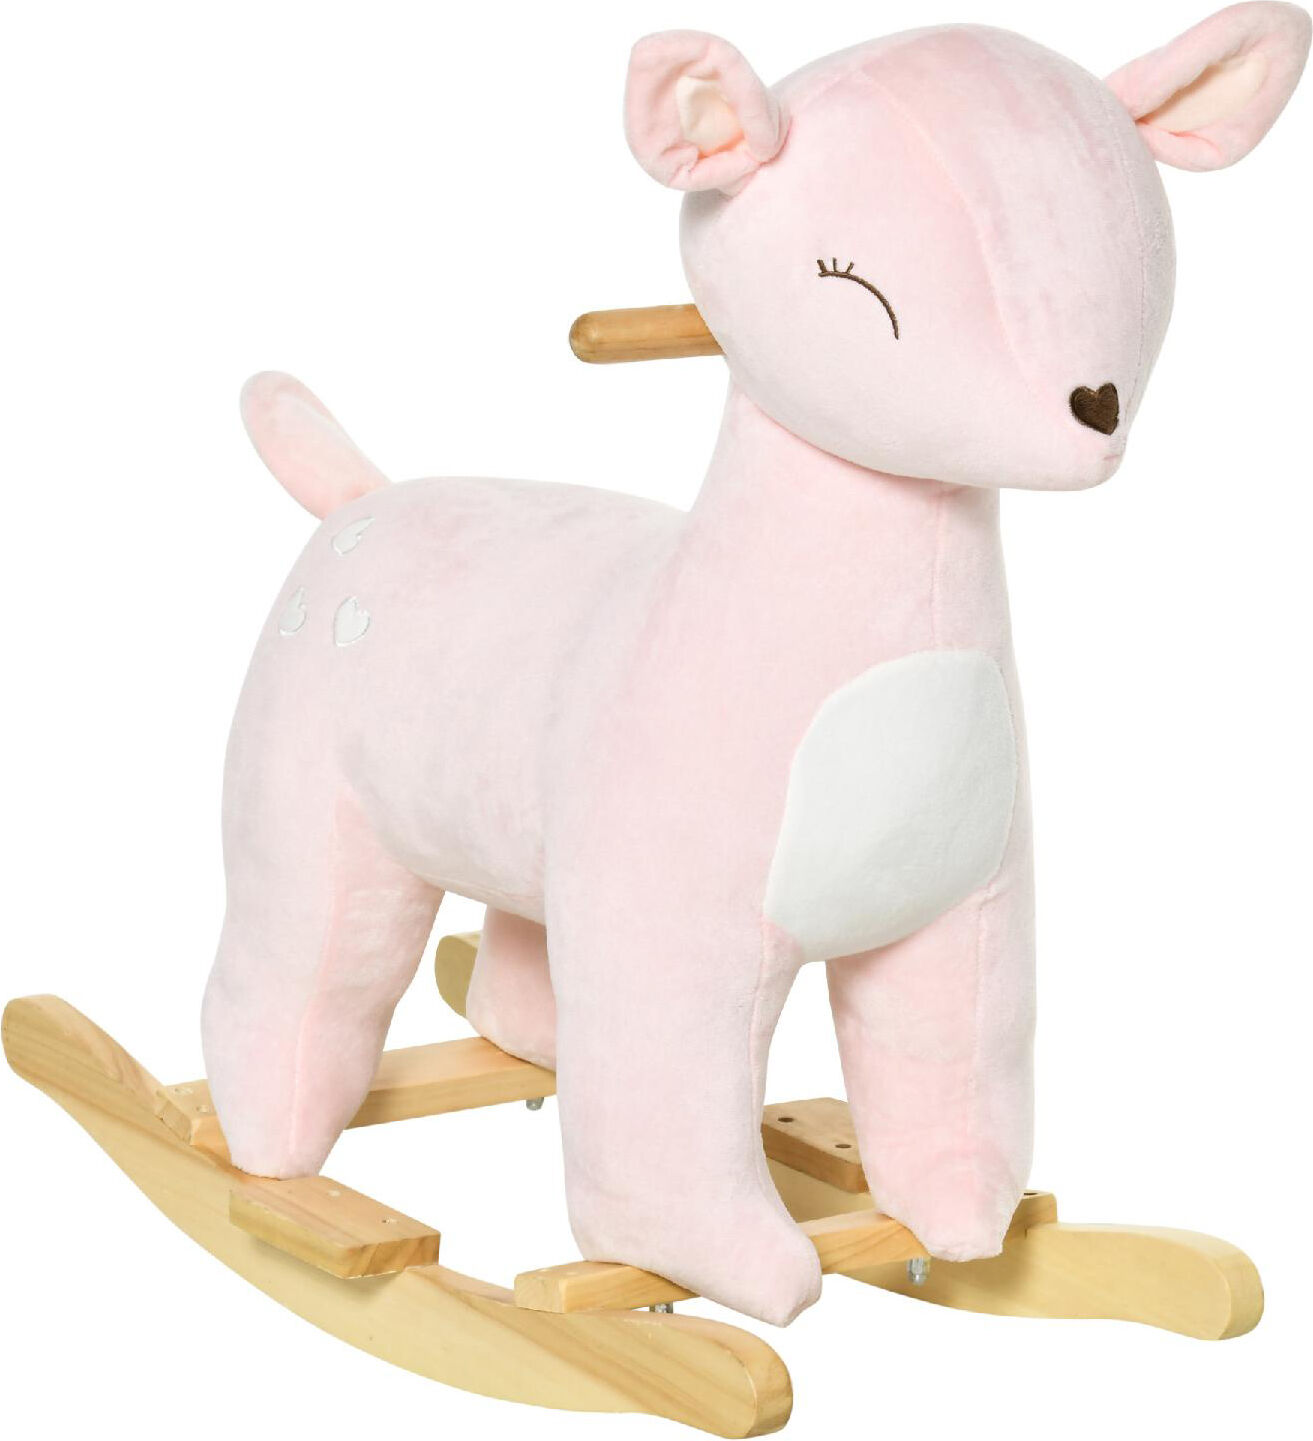 dechome 139/330 dondolo cervo peluche in legno con suoni cavalcabile per bambini da 3+ anni colore rosa - 139/330